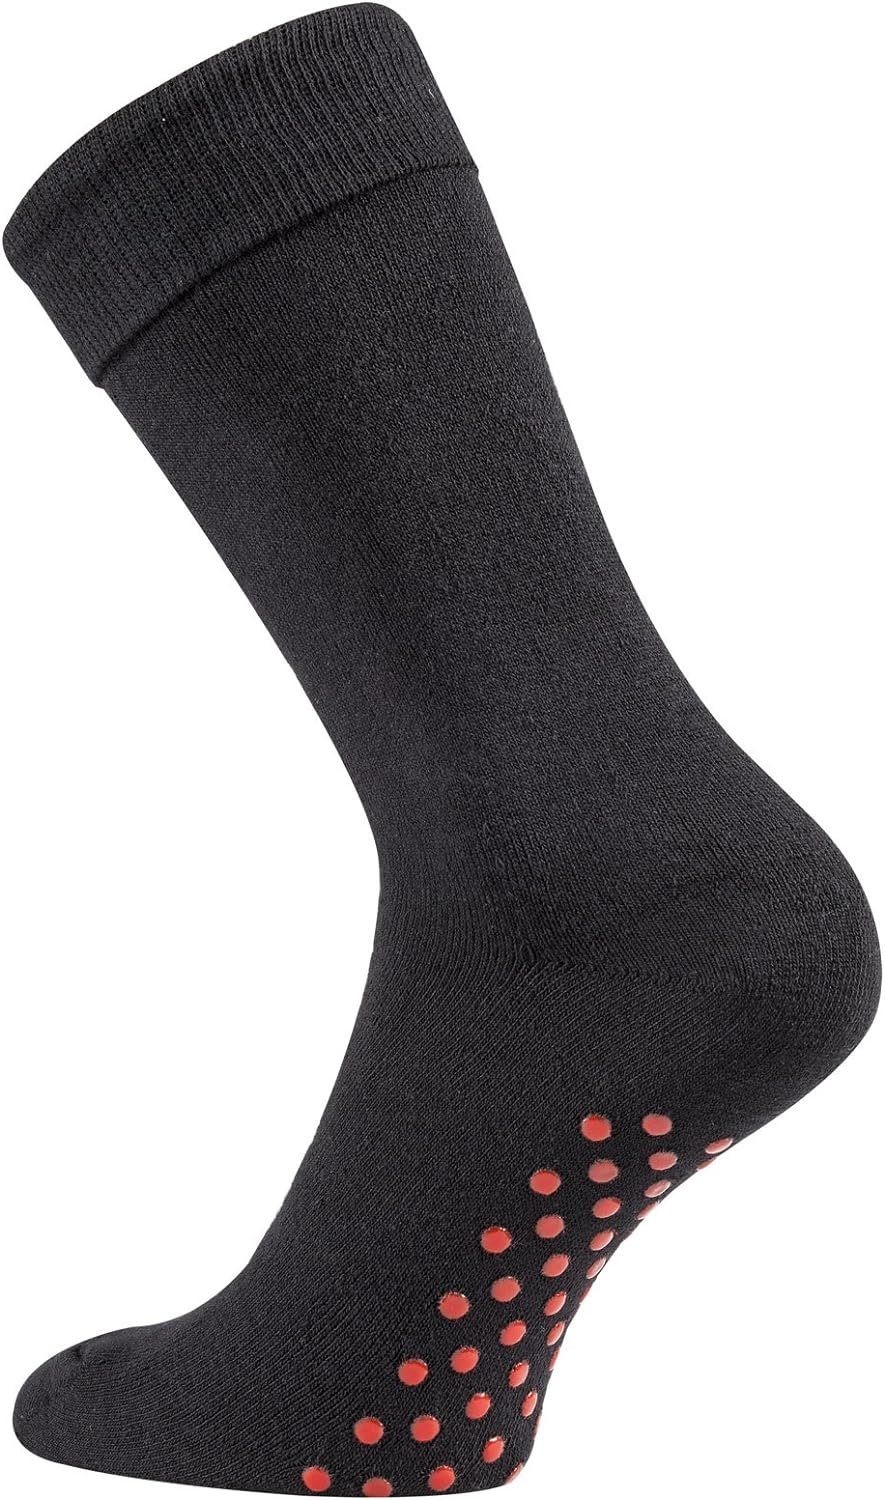 TippTexx 24 Haussocken 2 Paar Homesocks schwarze ABS-Socken Stopper-Socken Anti-Rutsch-Socken